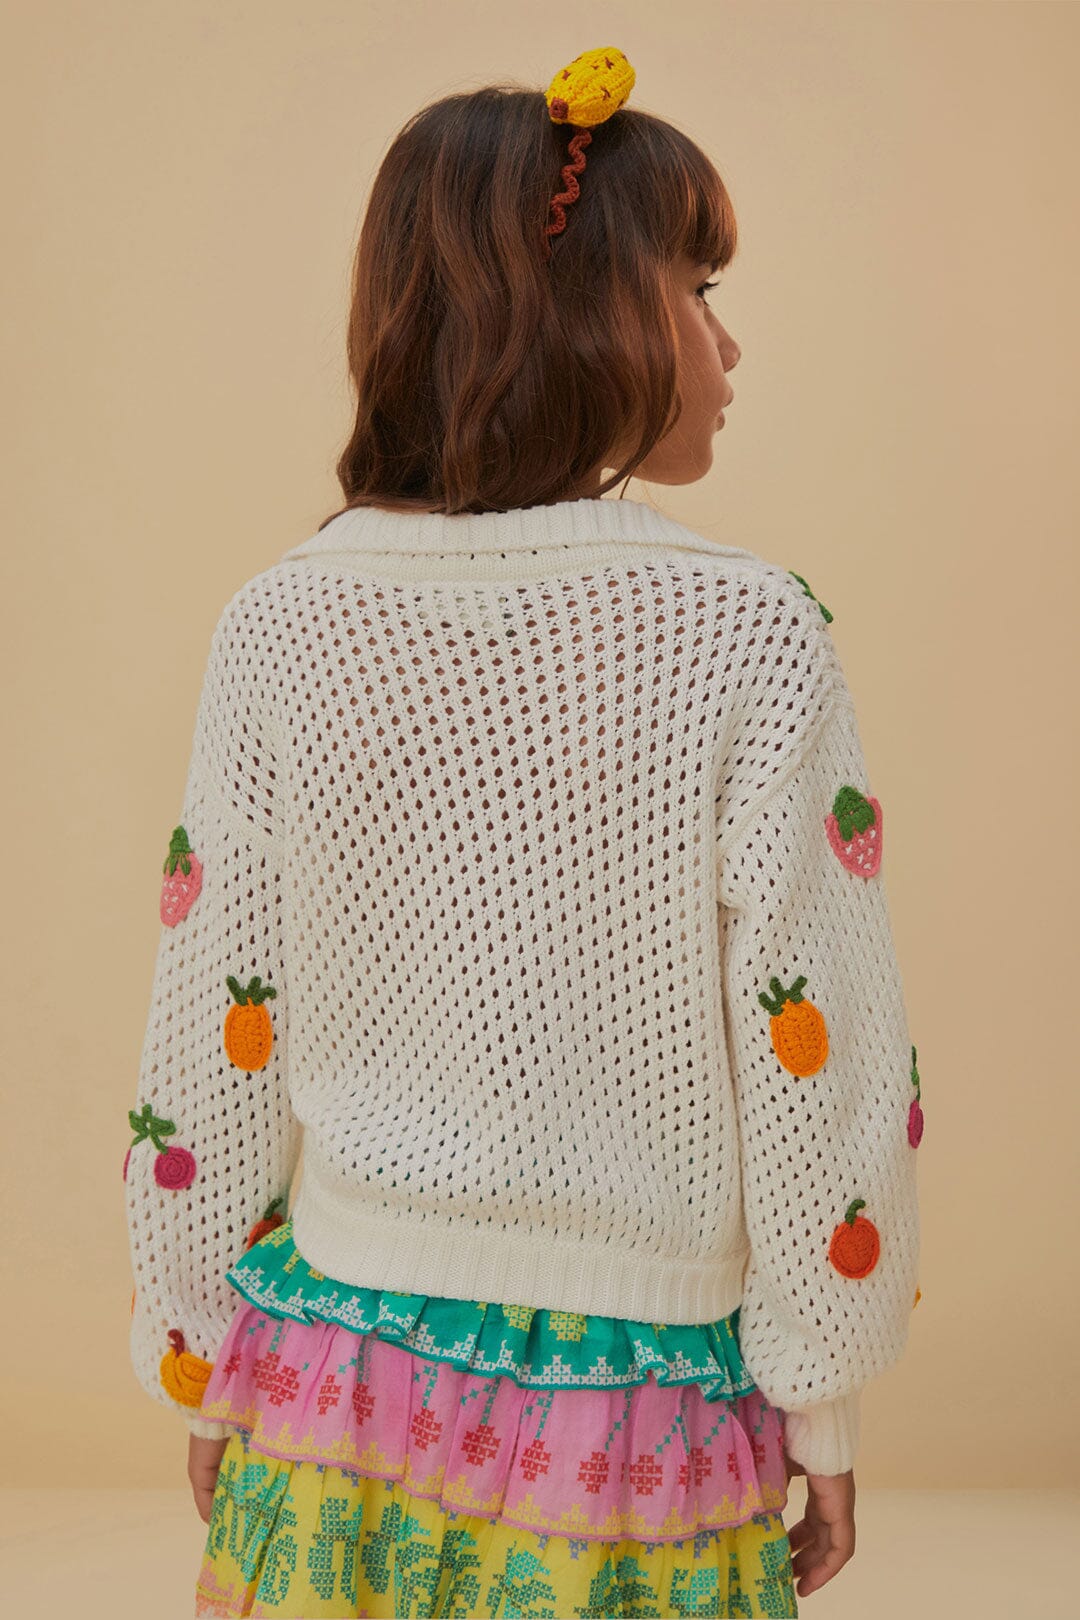 Crochet Fruit Kids Sweater